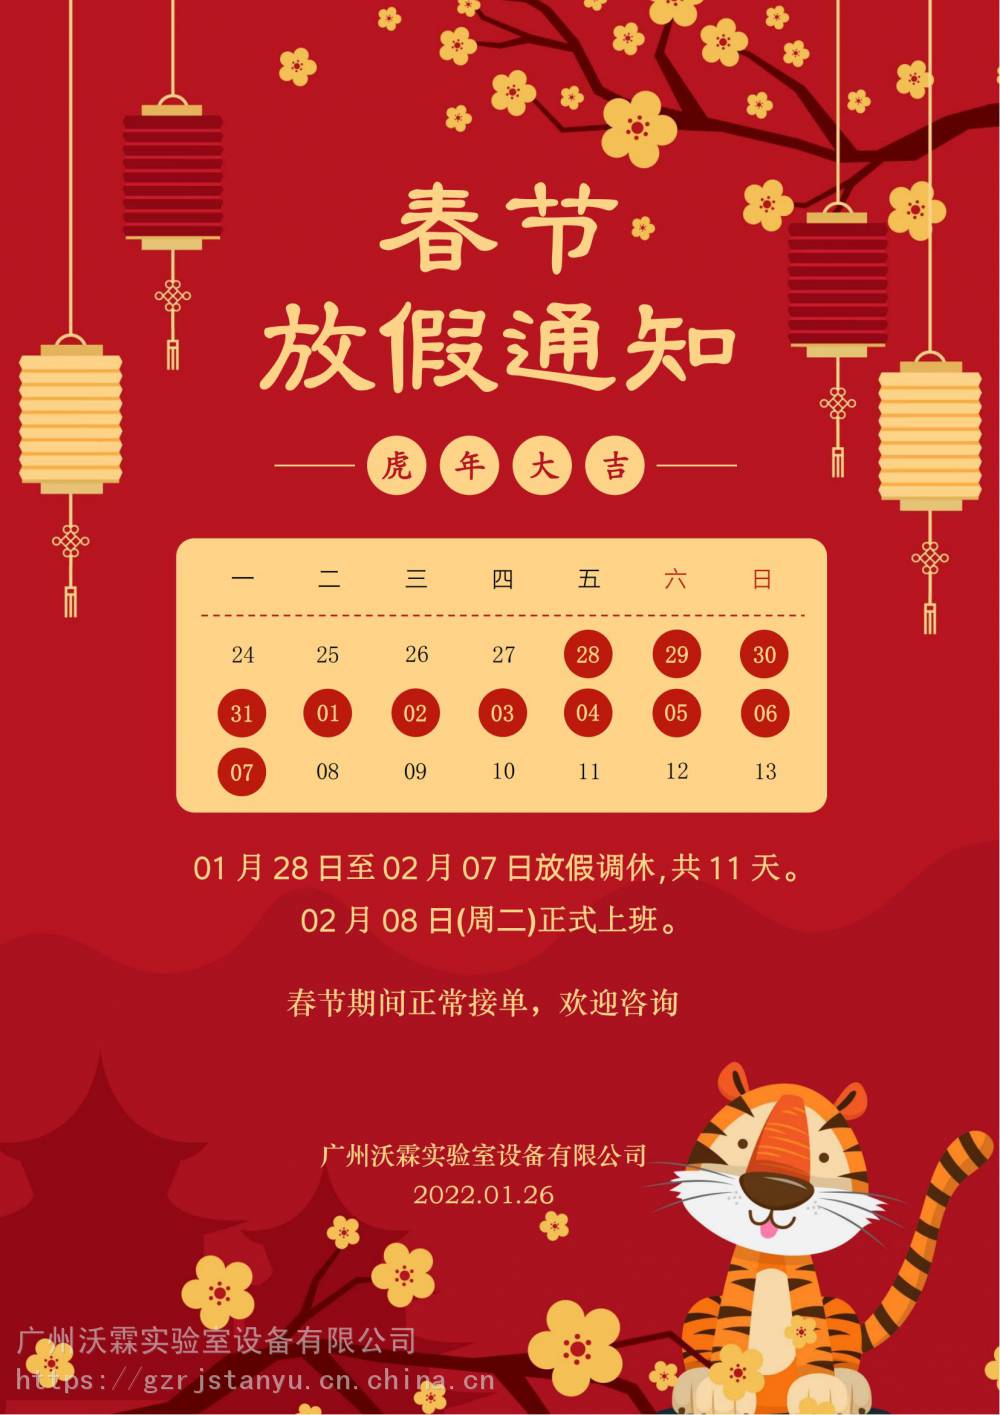 2022年01月28日-02月07日春节放假时间;02月08日(正月初八)正式开工